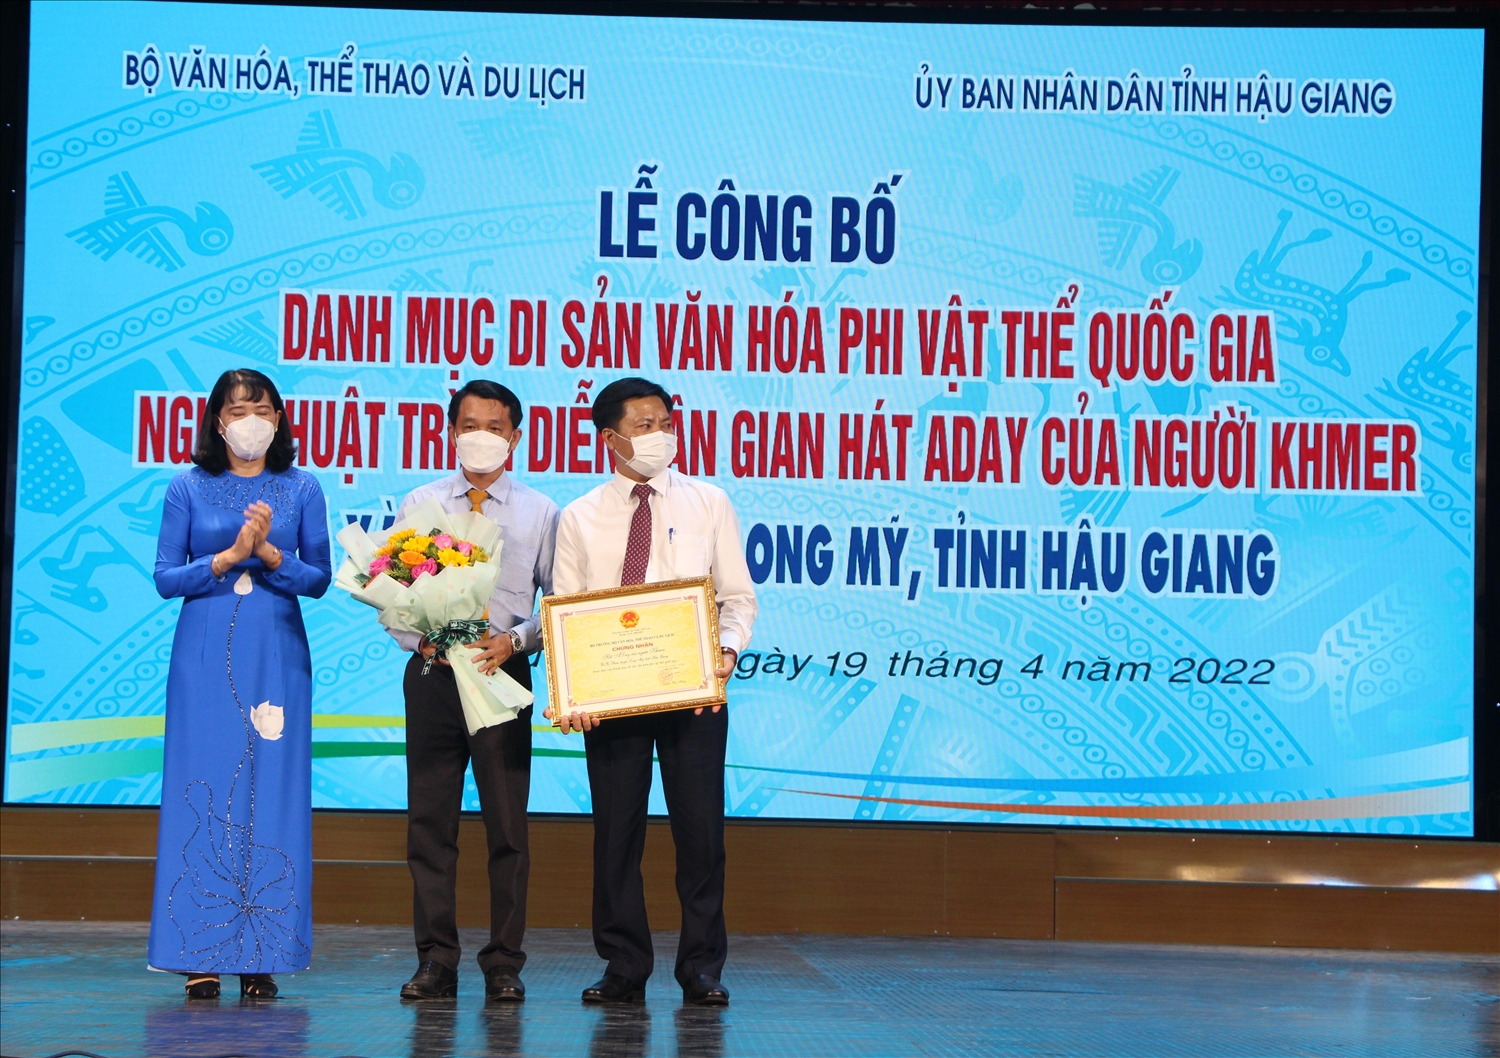 Bà Hồ Thu Ánh - Phó Chủ tịch UBND tỉnh Hậu Giang trao bảng chứng nhận cho UBND huyện Long Mỹ 